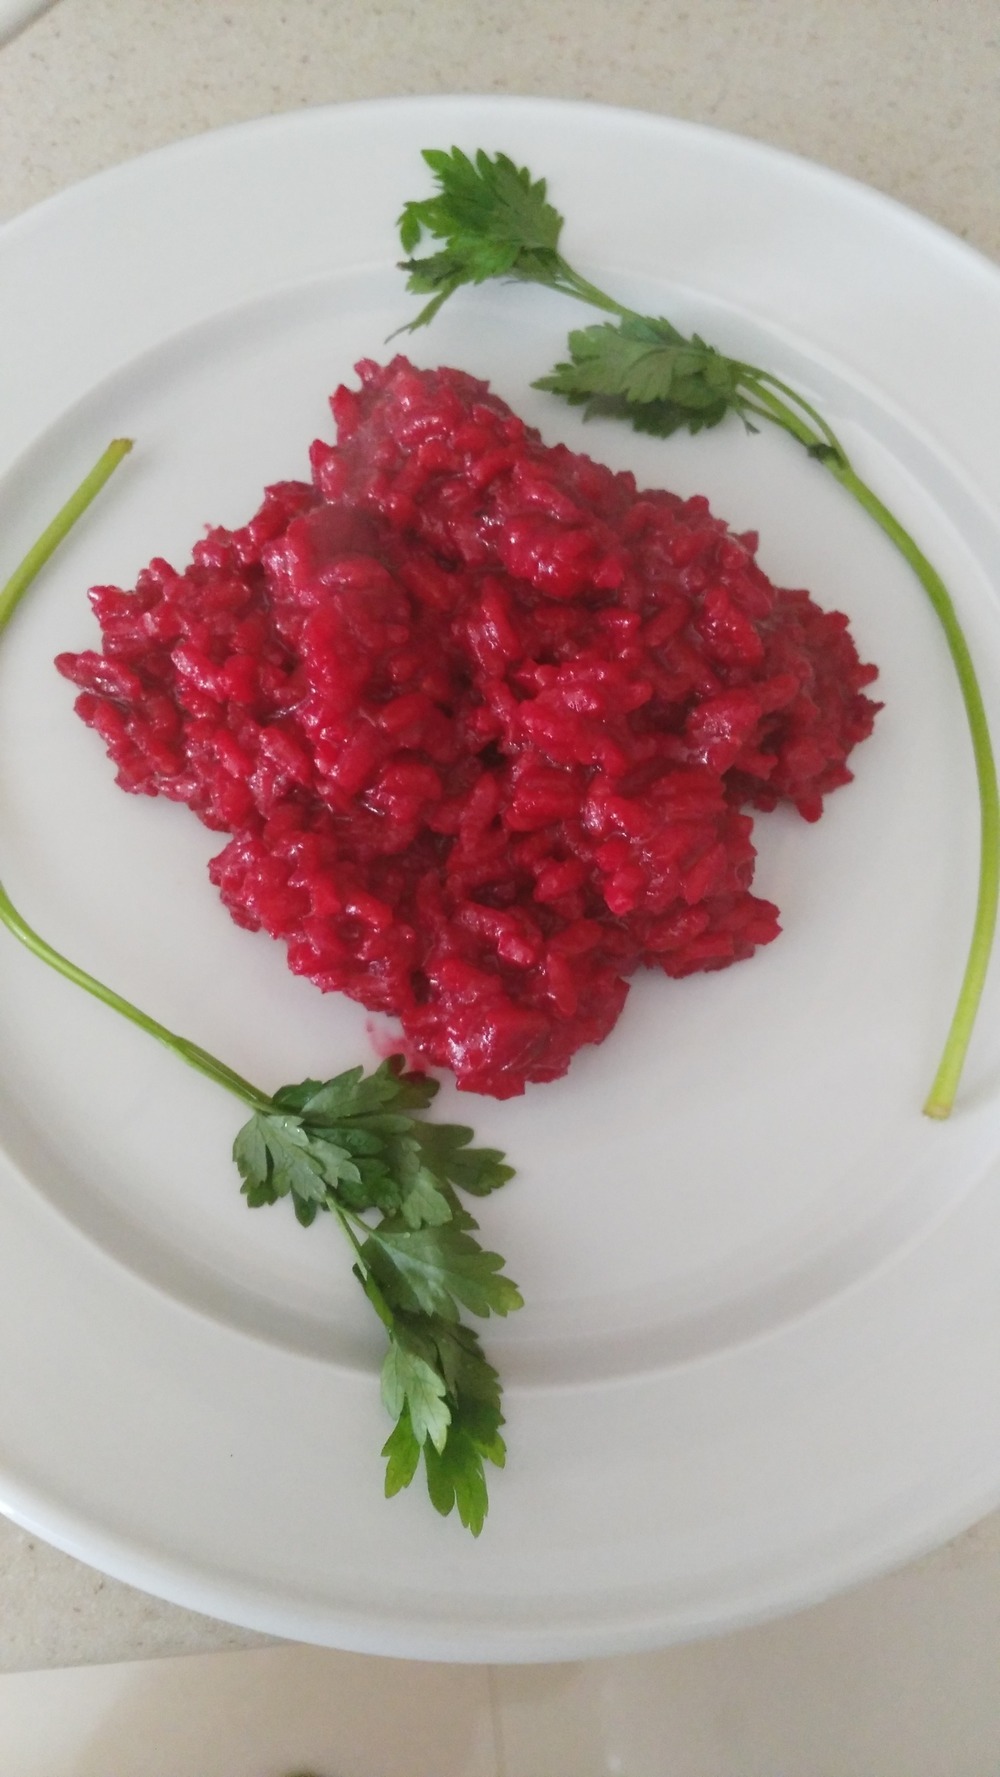 Risotto alla barbabietola rossa of emanuela - Recipefy